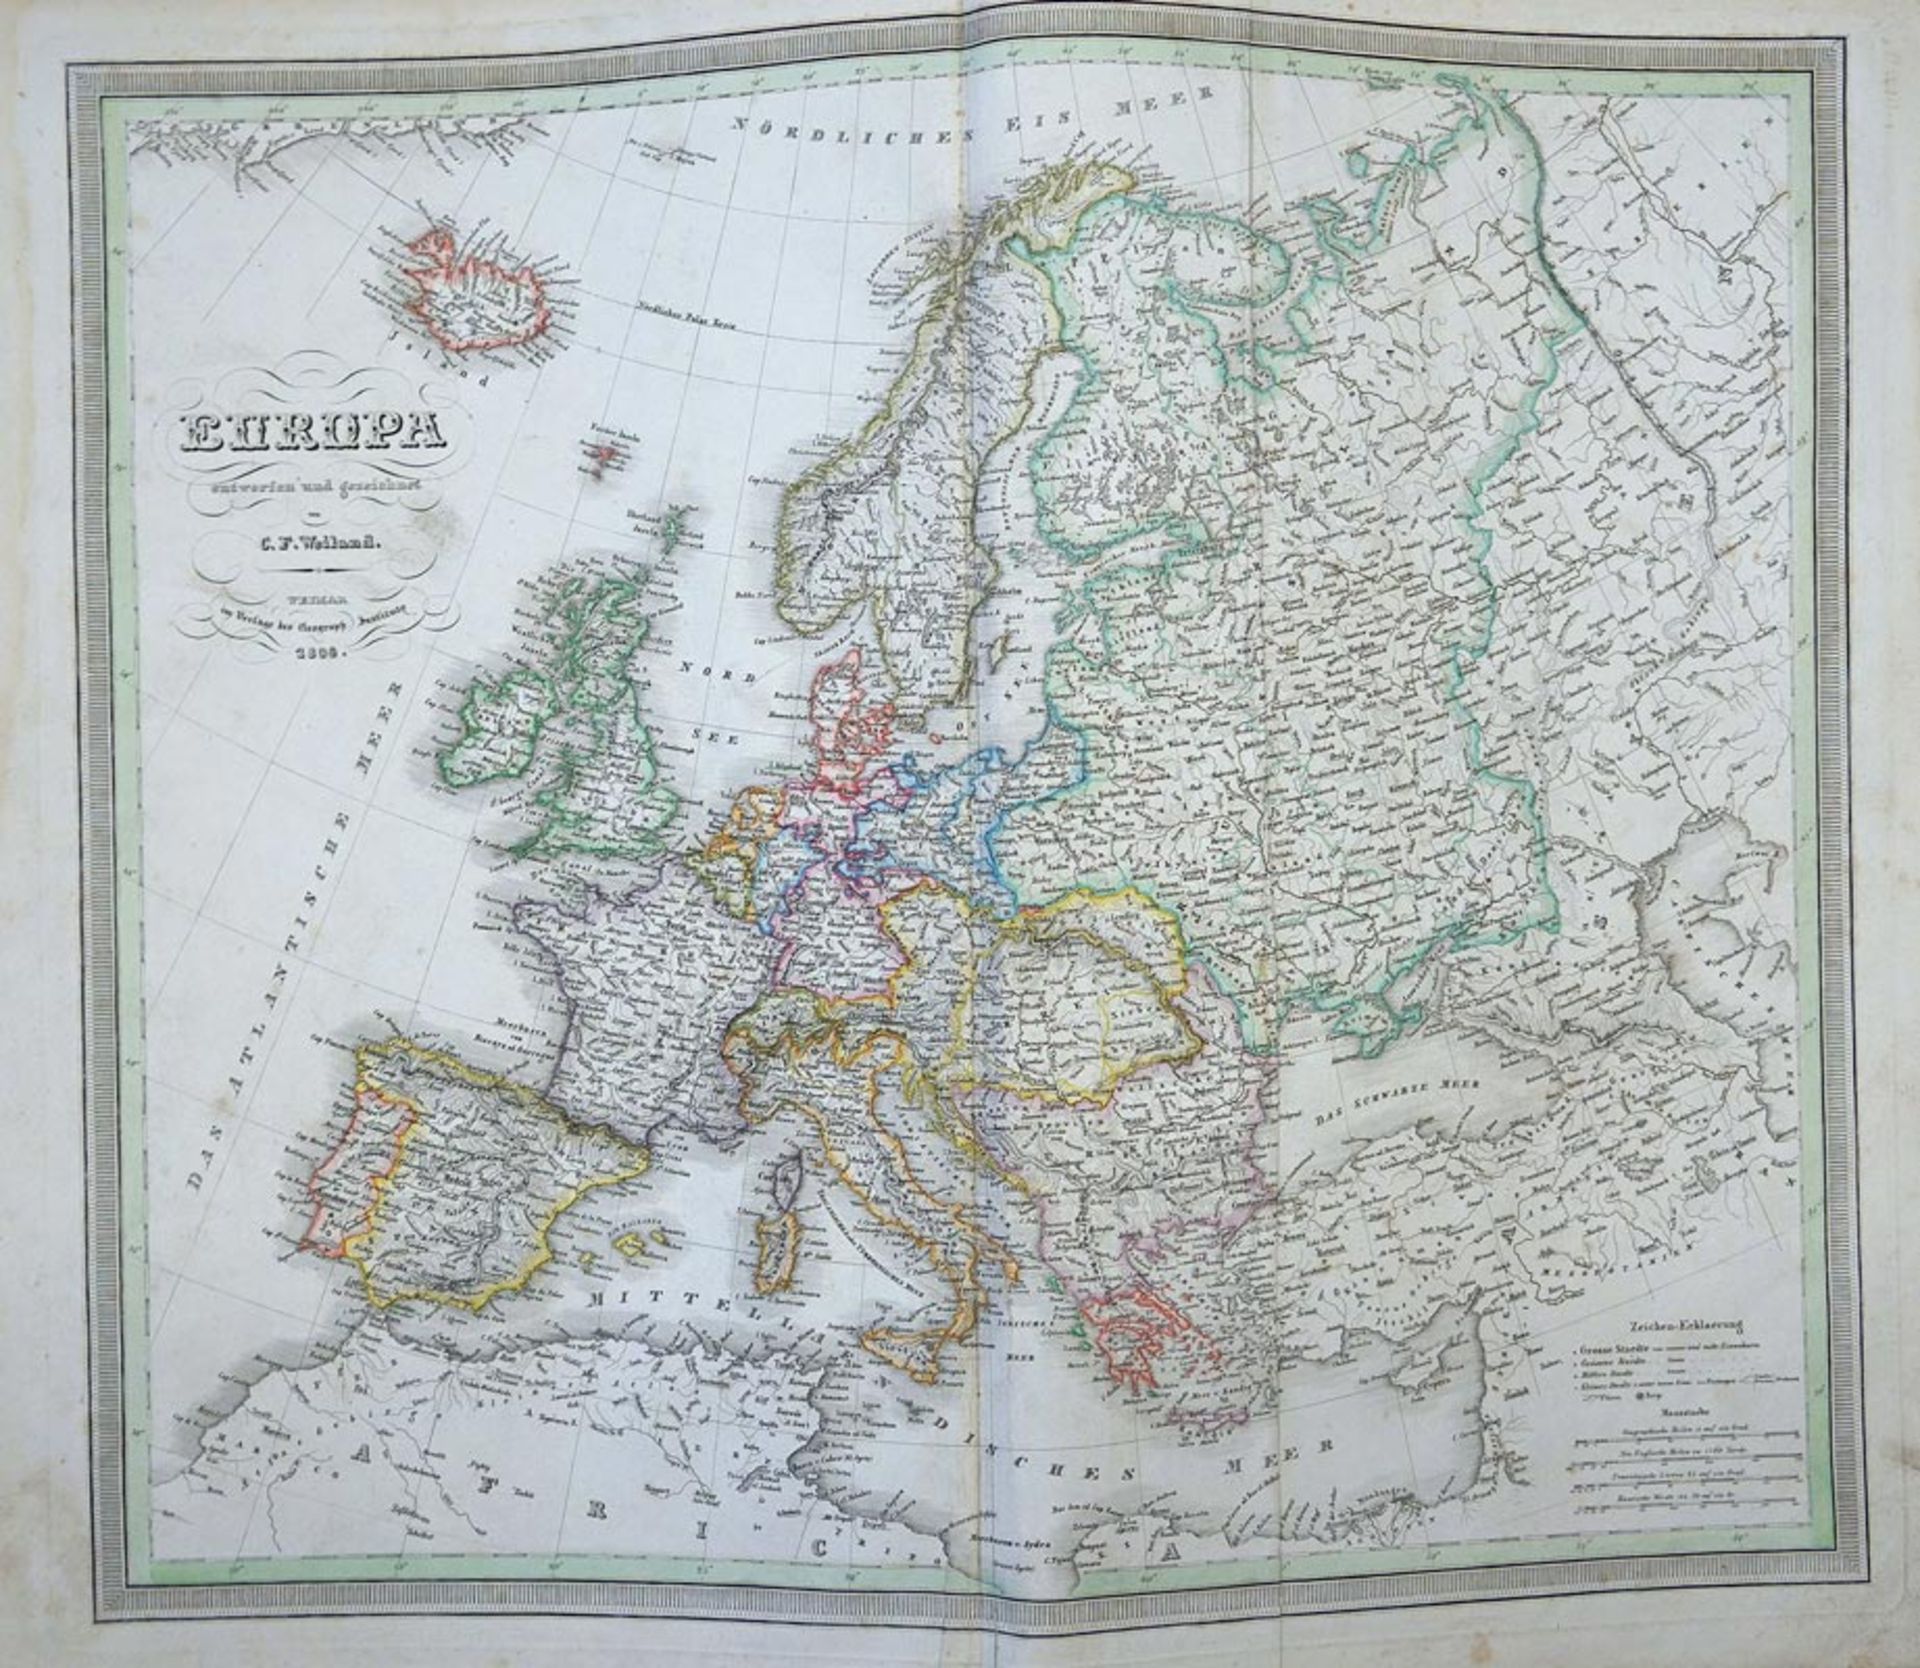 Weiland, Carl Ferdinand: Allgemeiner Hand-Atlas der ganzen Erde